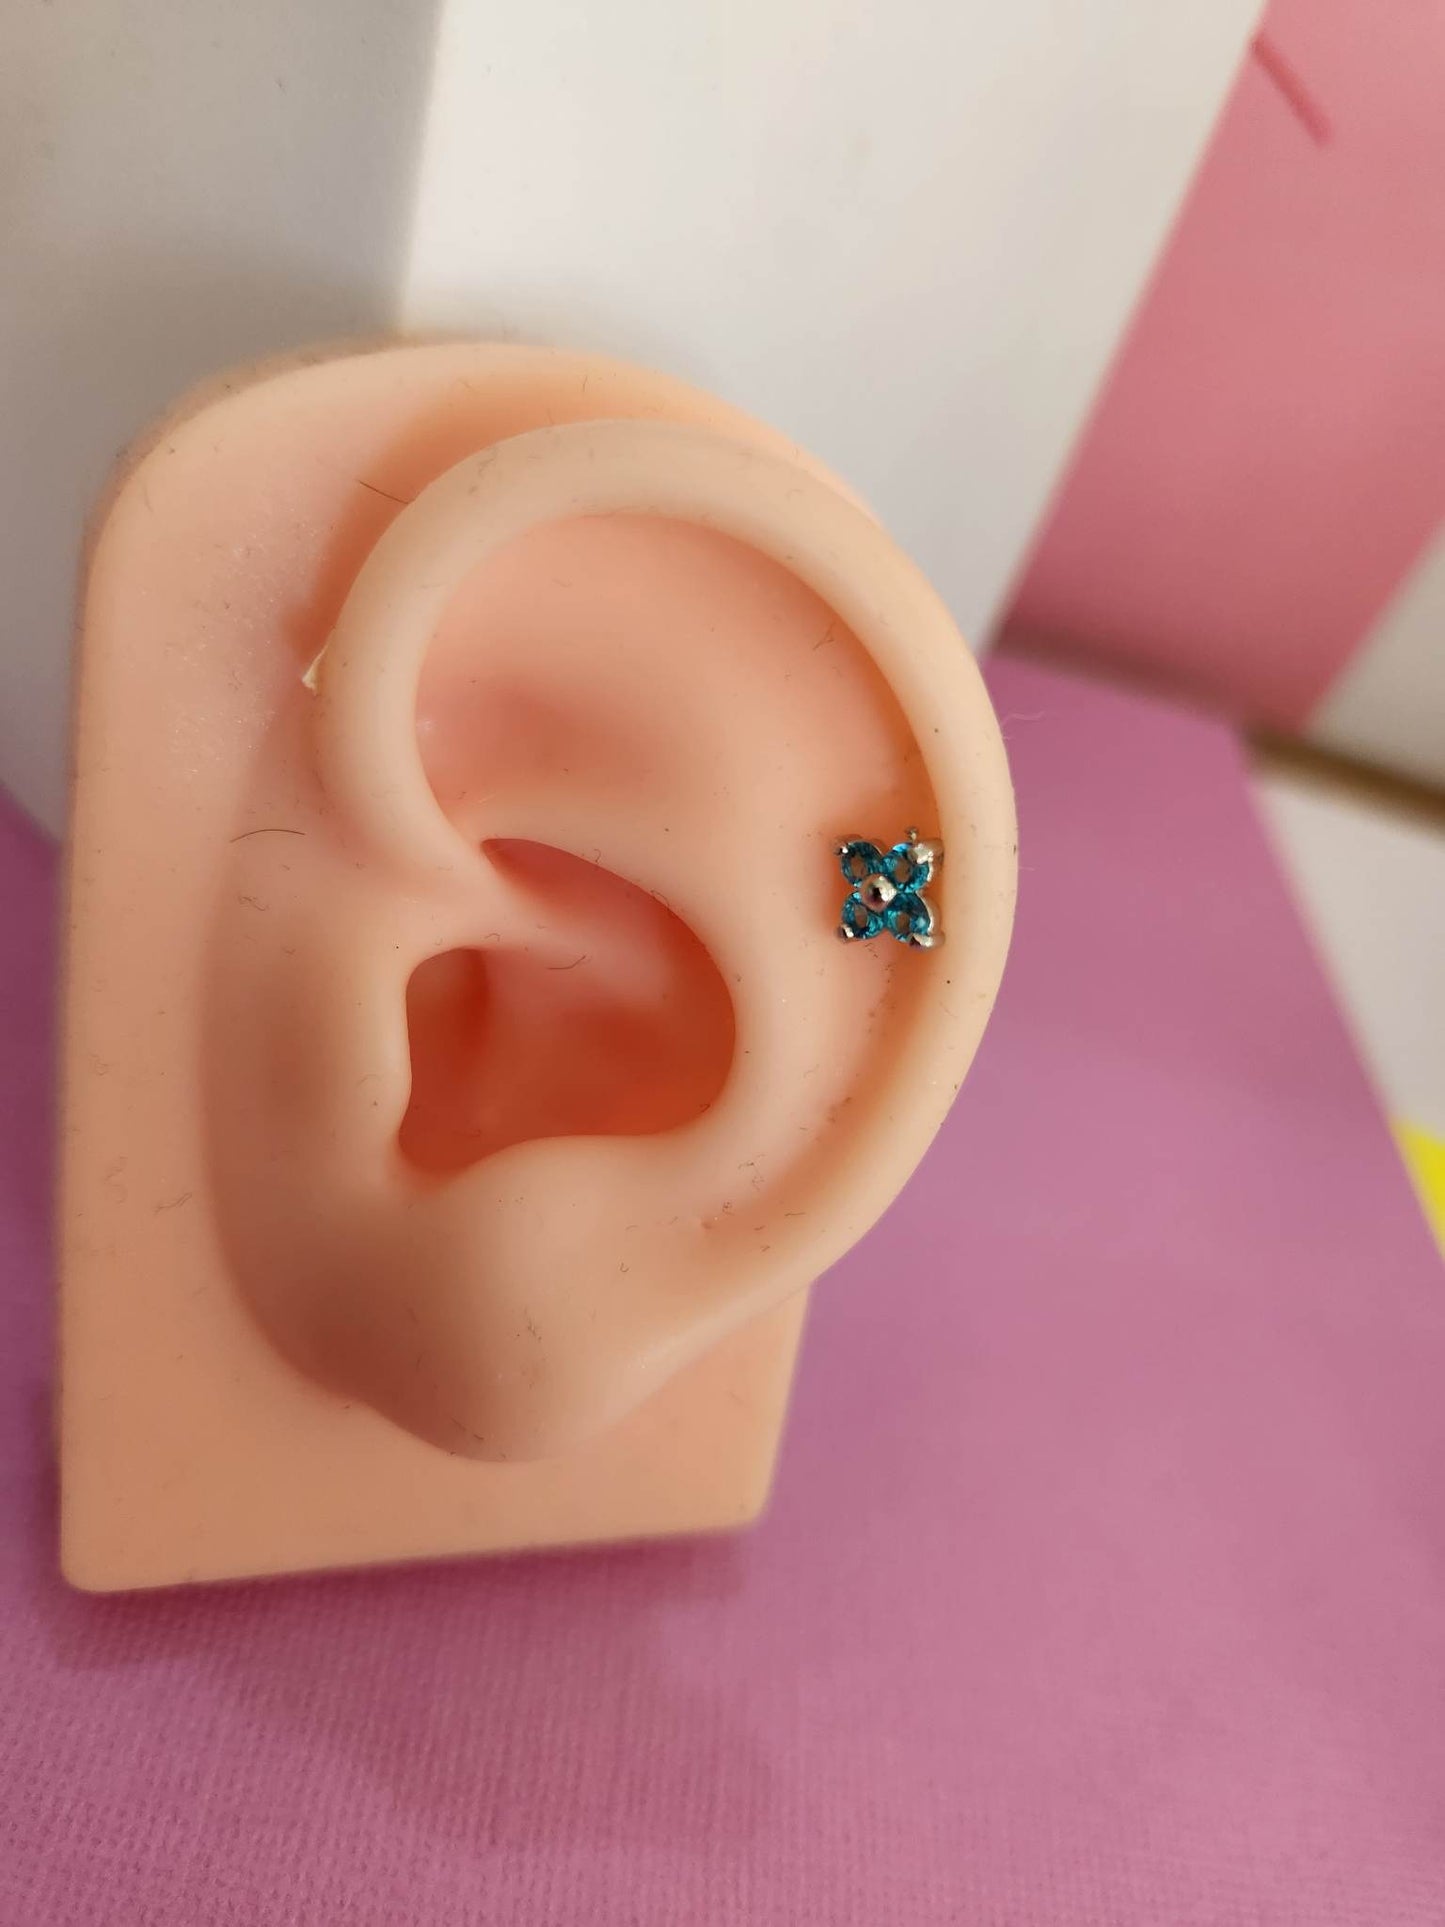 Blue Flower Ear Piercing Tragus Cartilage Flat Rook Earrings Bar - Pierced n Proud